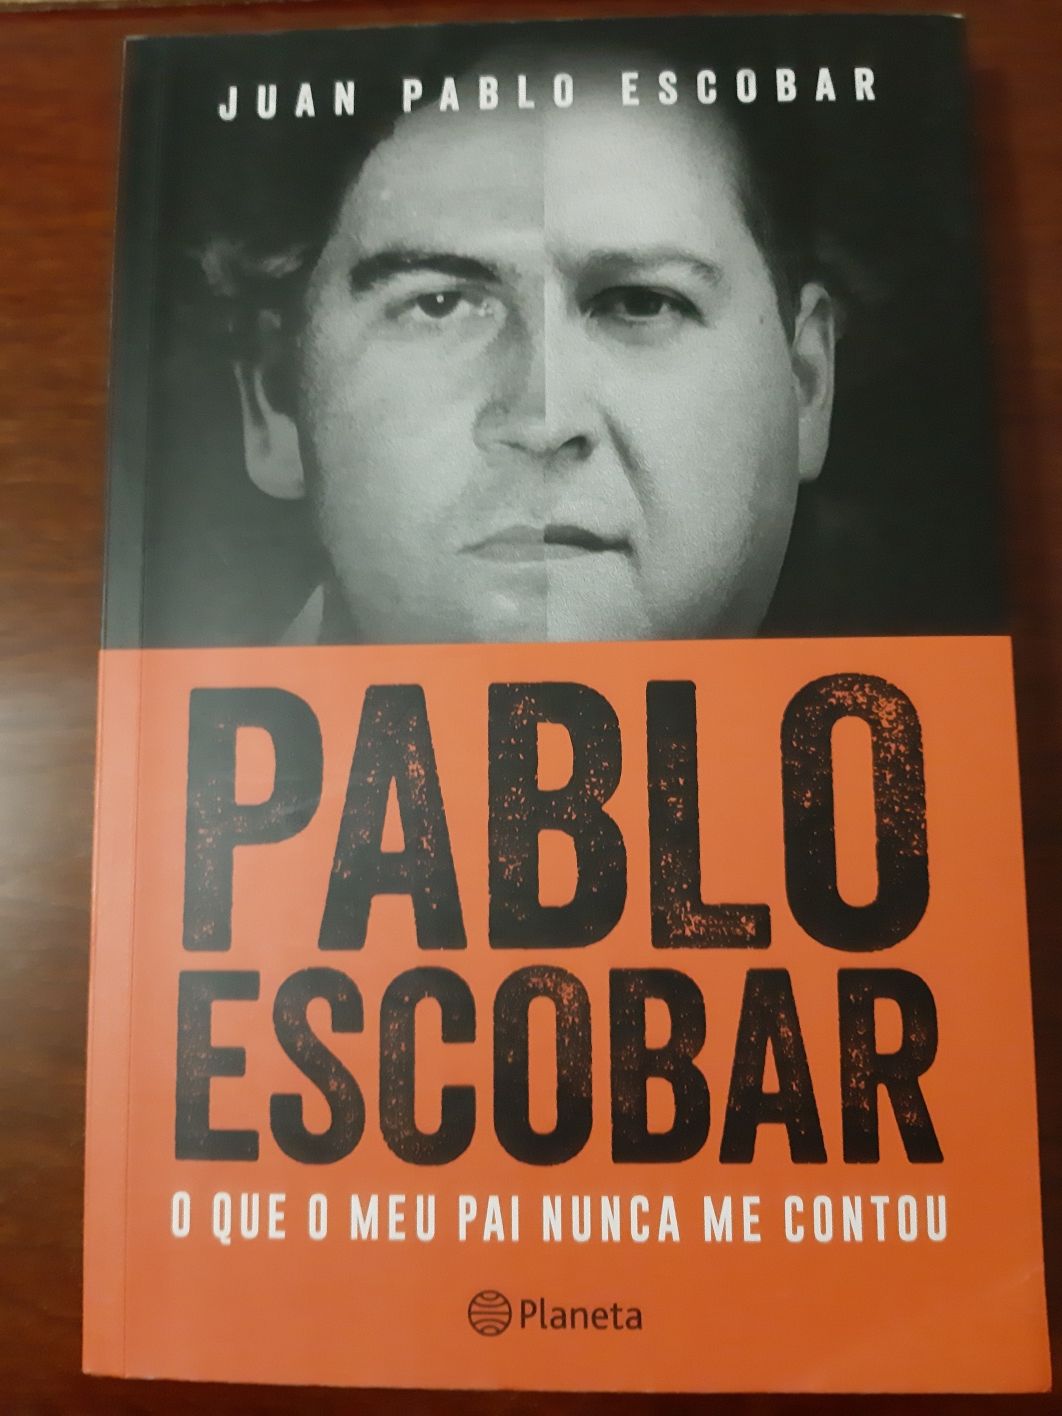 Livro "Pablo Escobar - O que o meu pai nunca me contou"